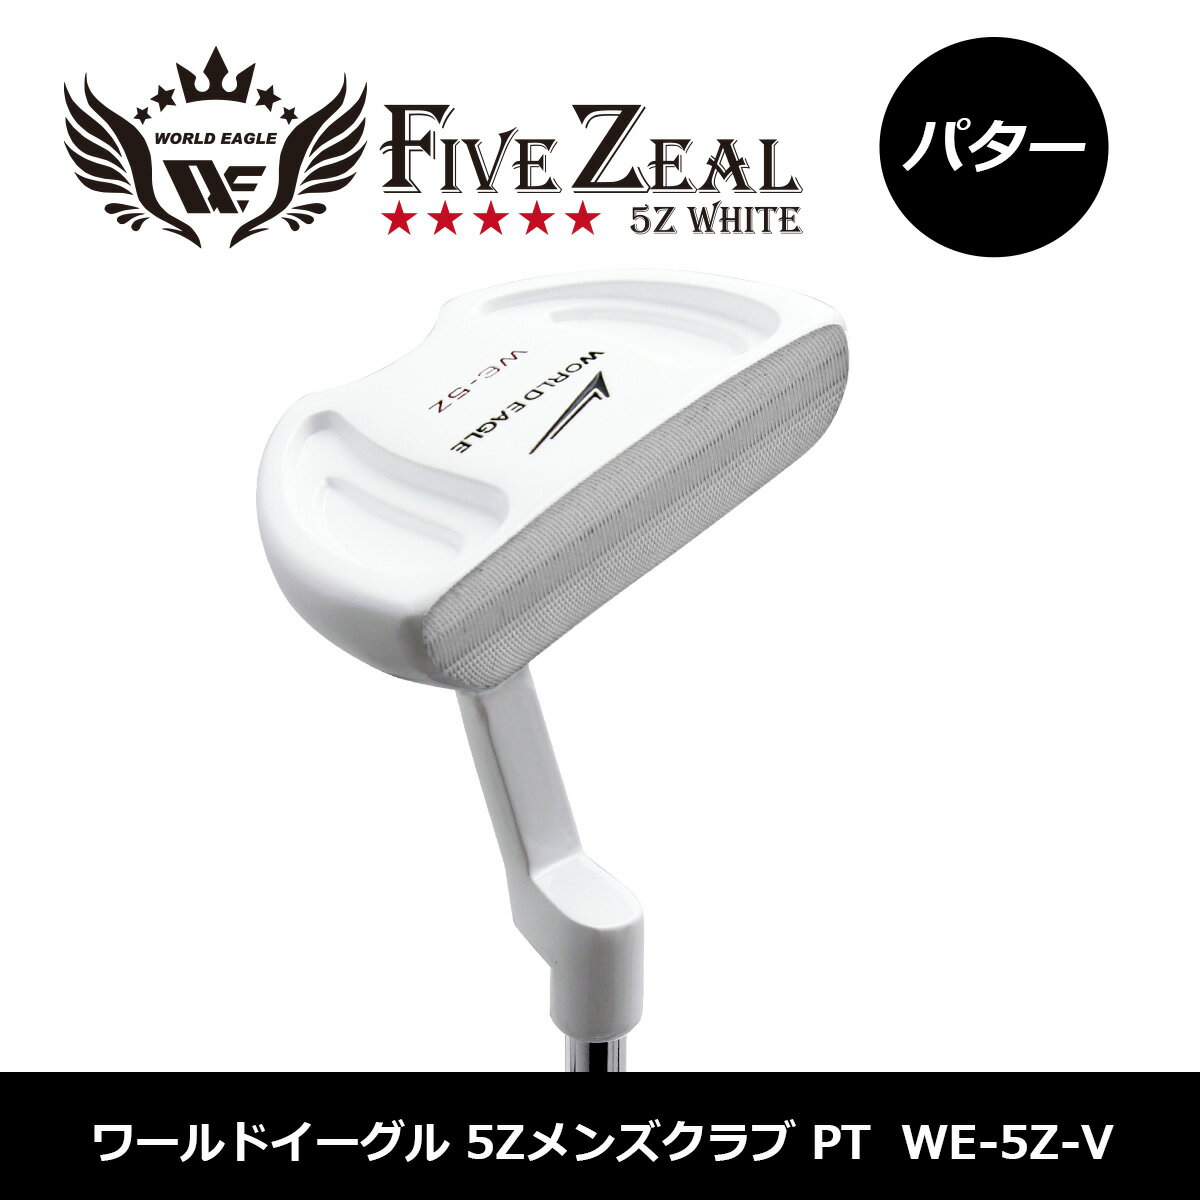 ワールドイーグル WORLDEAGLE 5Z パター ミッドマレットタイプ ホワイト【add-option】